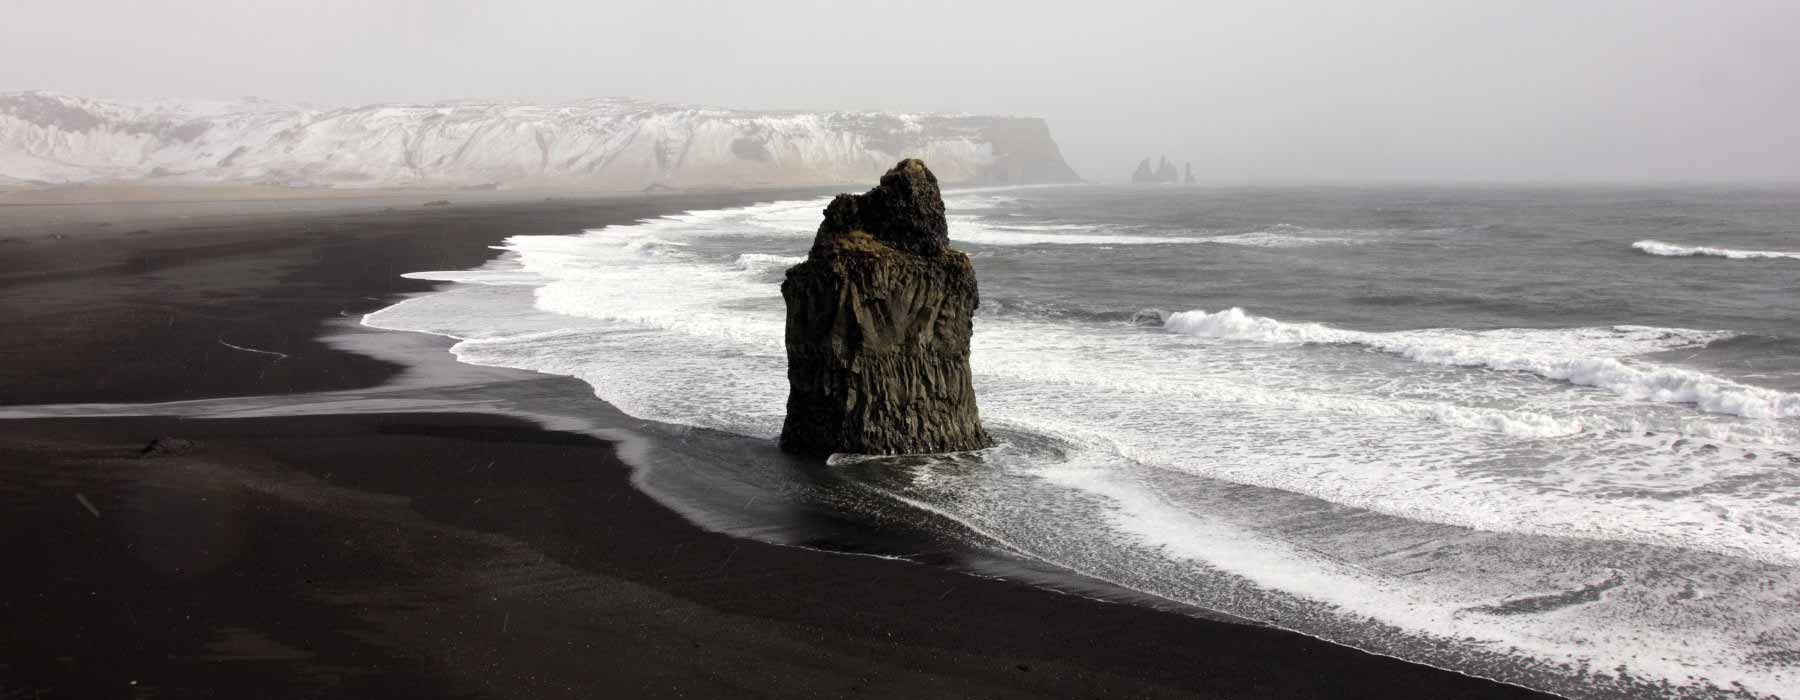 Iceland<br class="hidden-md hidden-lg" /> Responsible Travel